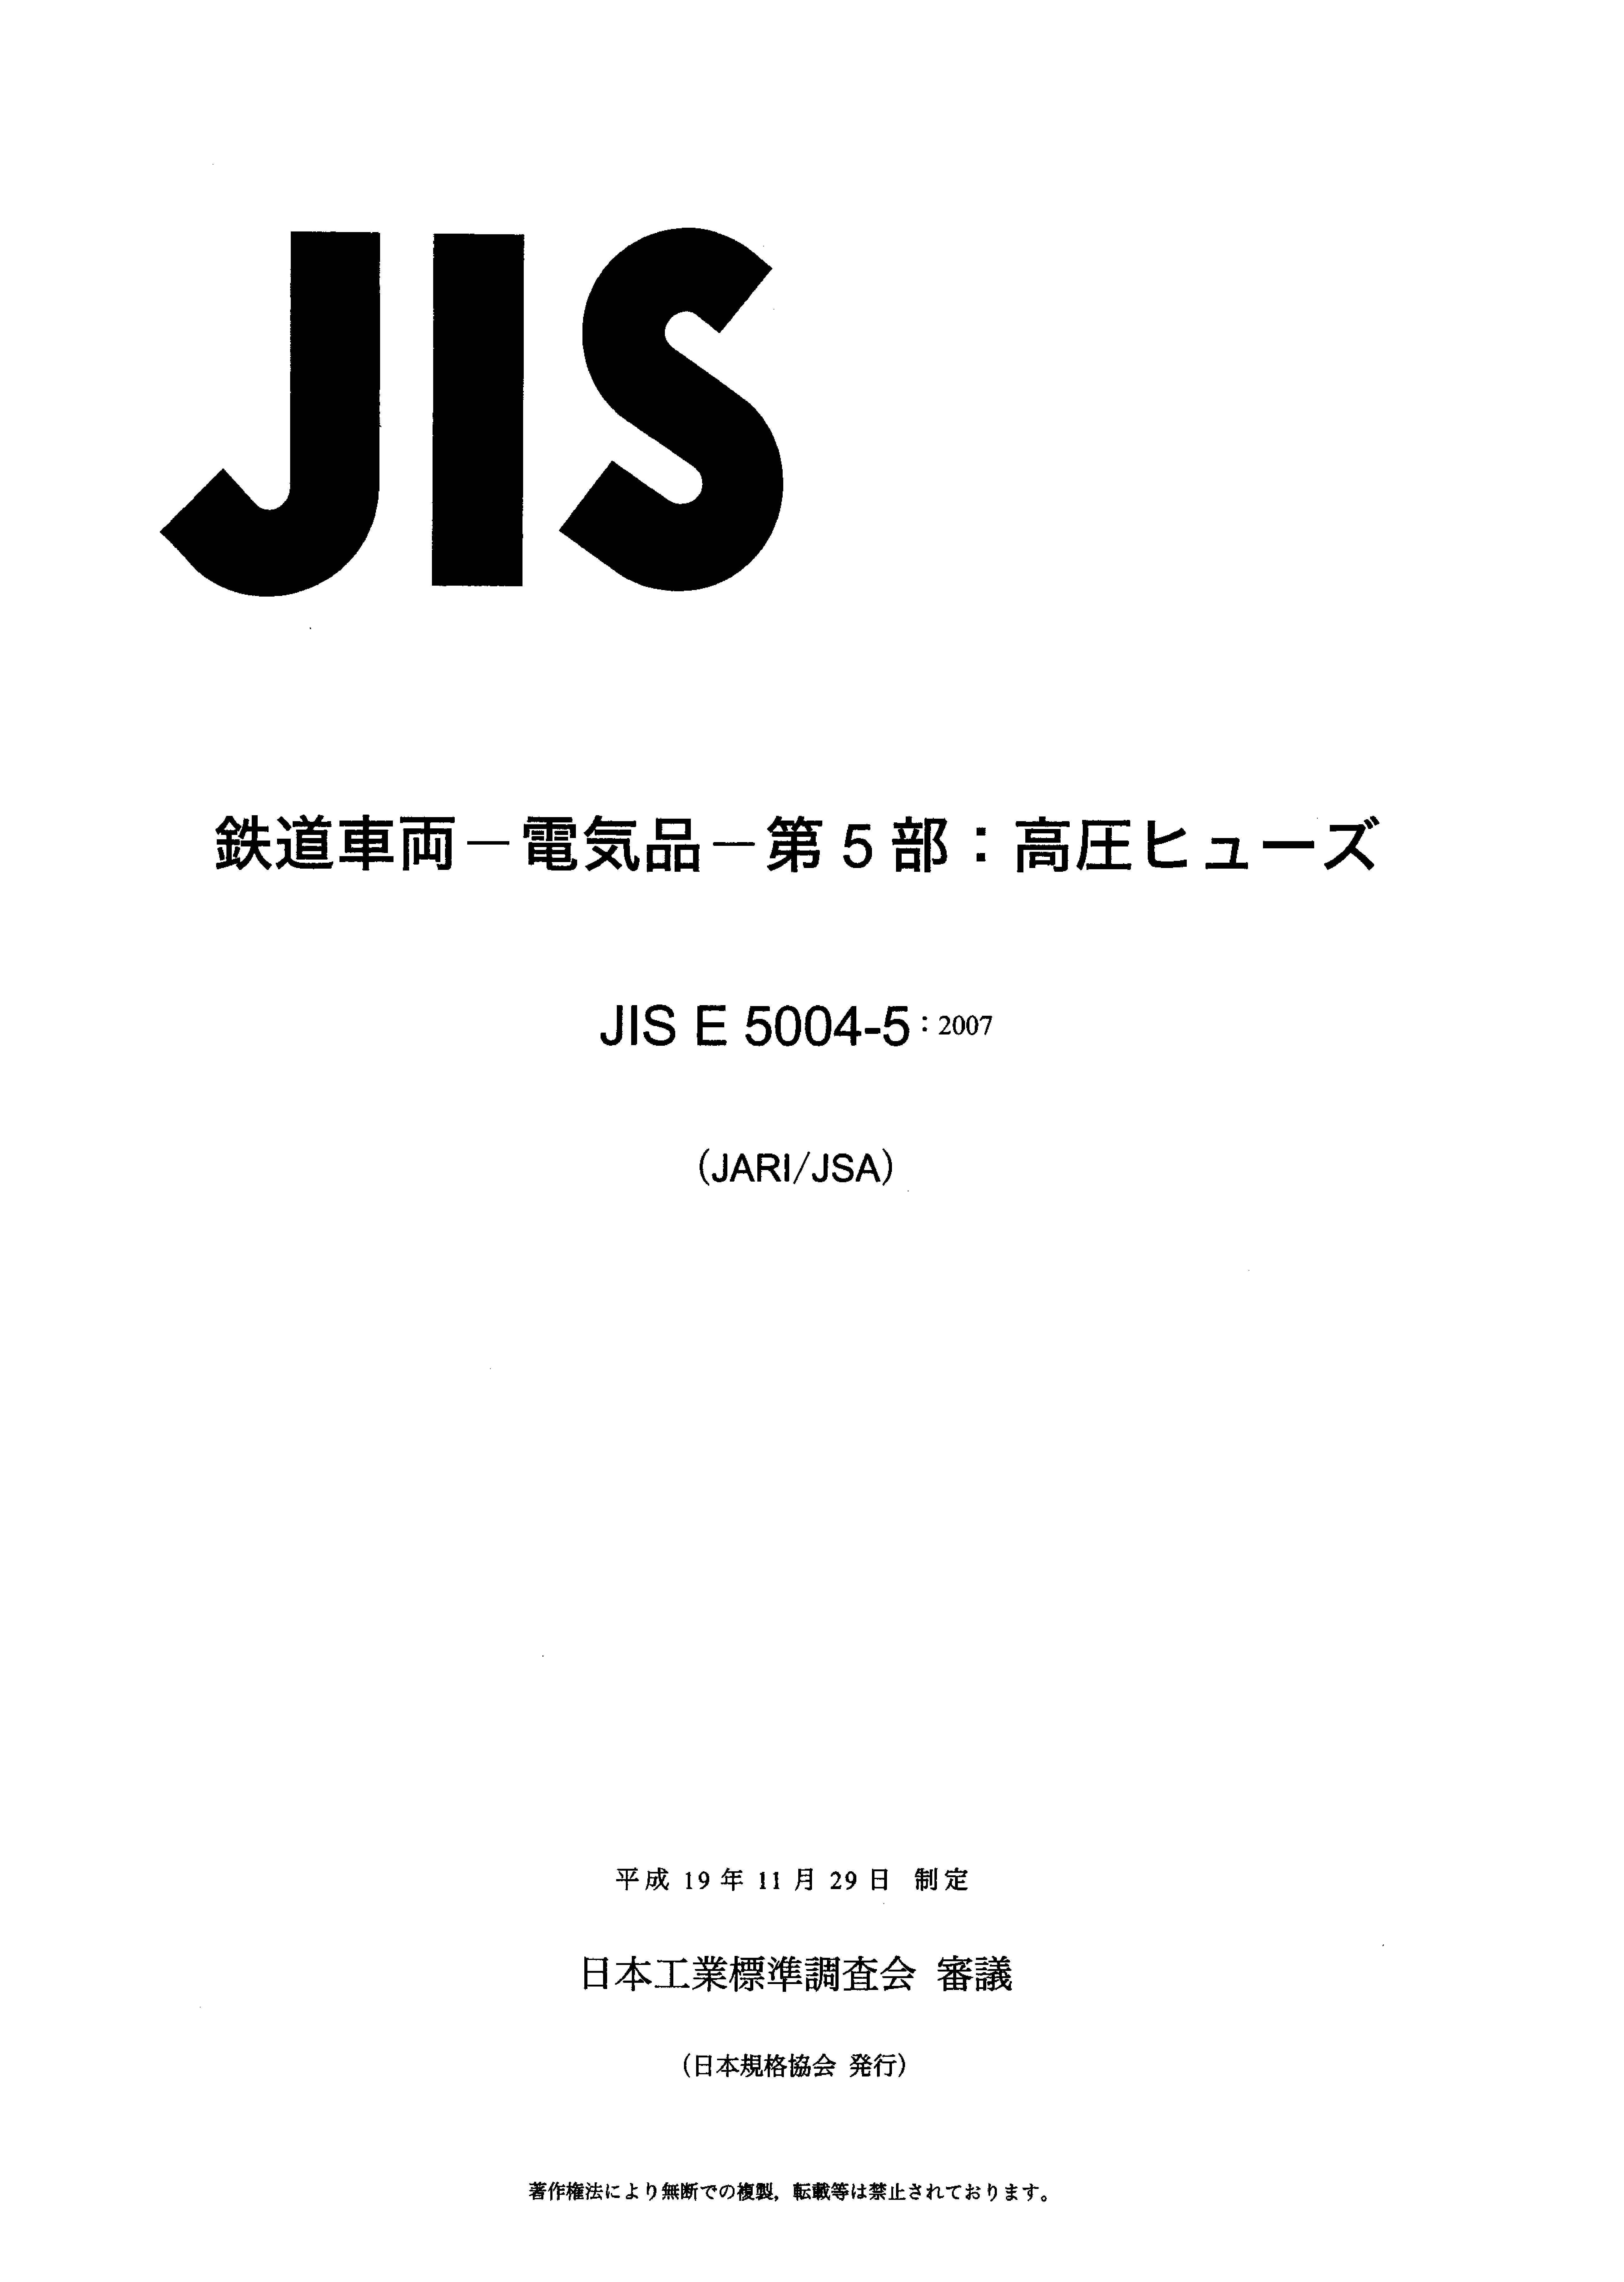 JIS E 5004-5:2007